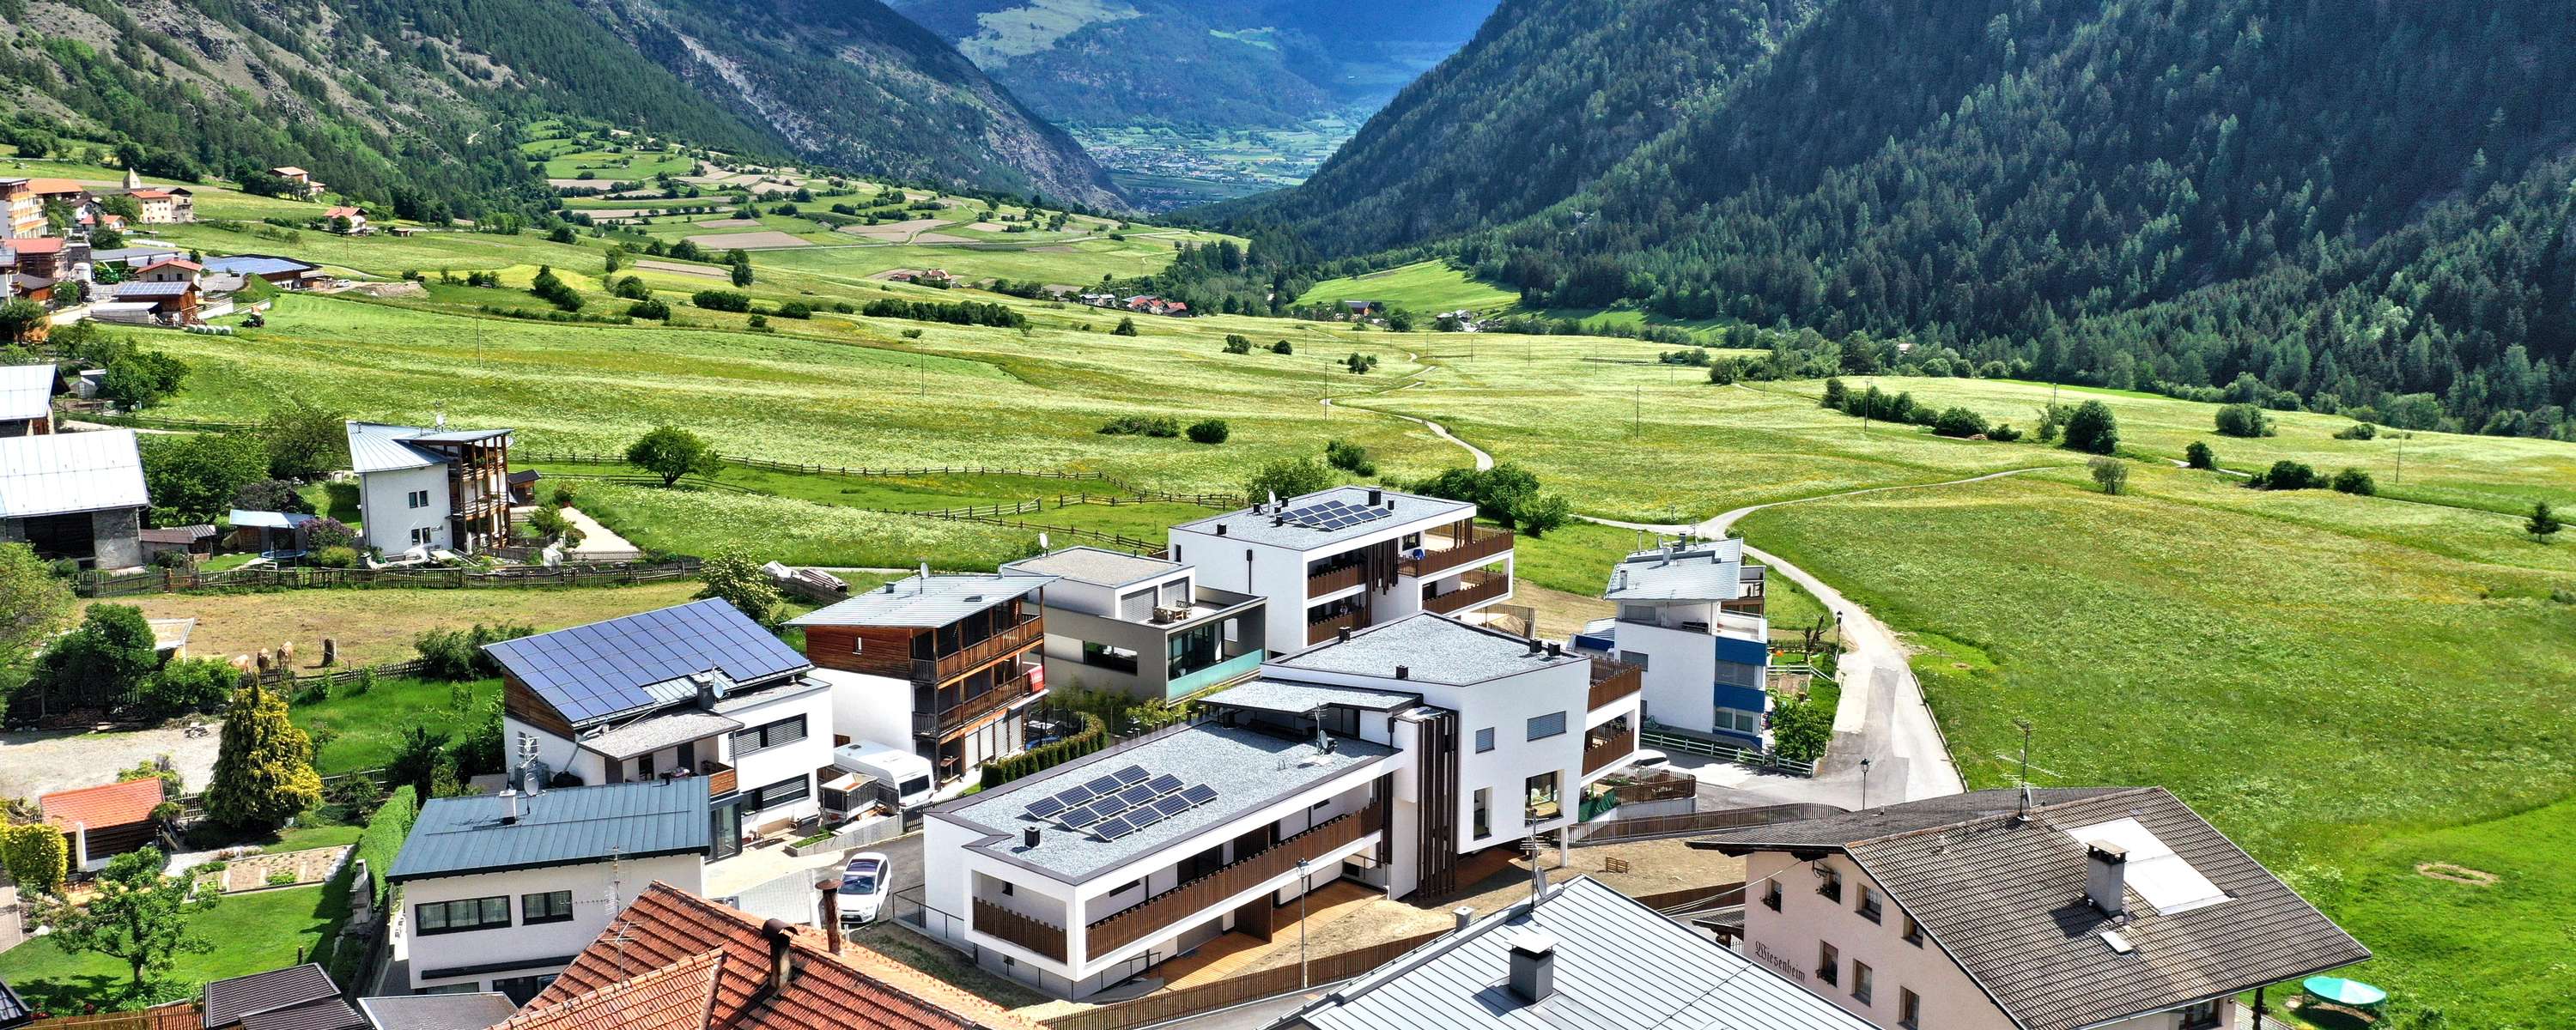 Immobilien Grundstucke In Sudtirol Immobilien Wellenzohn